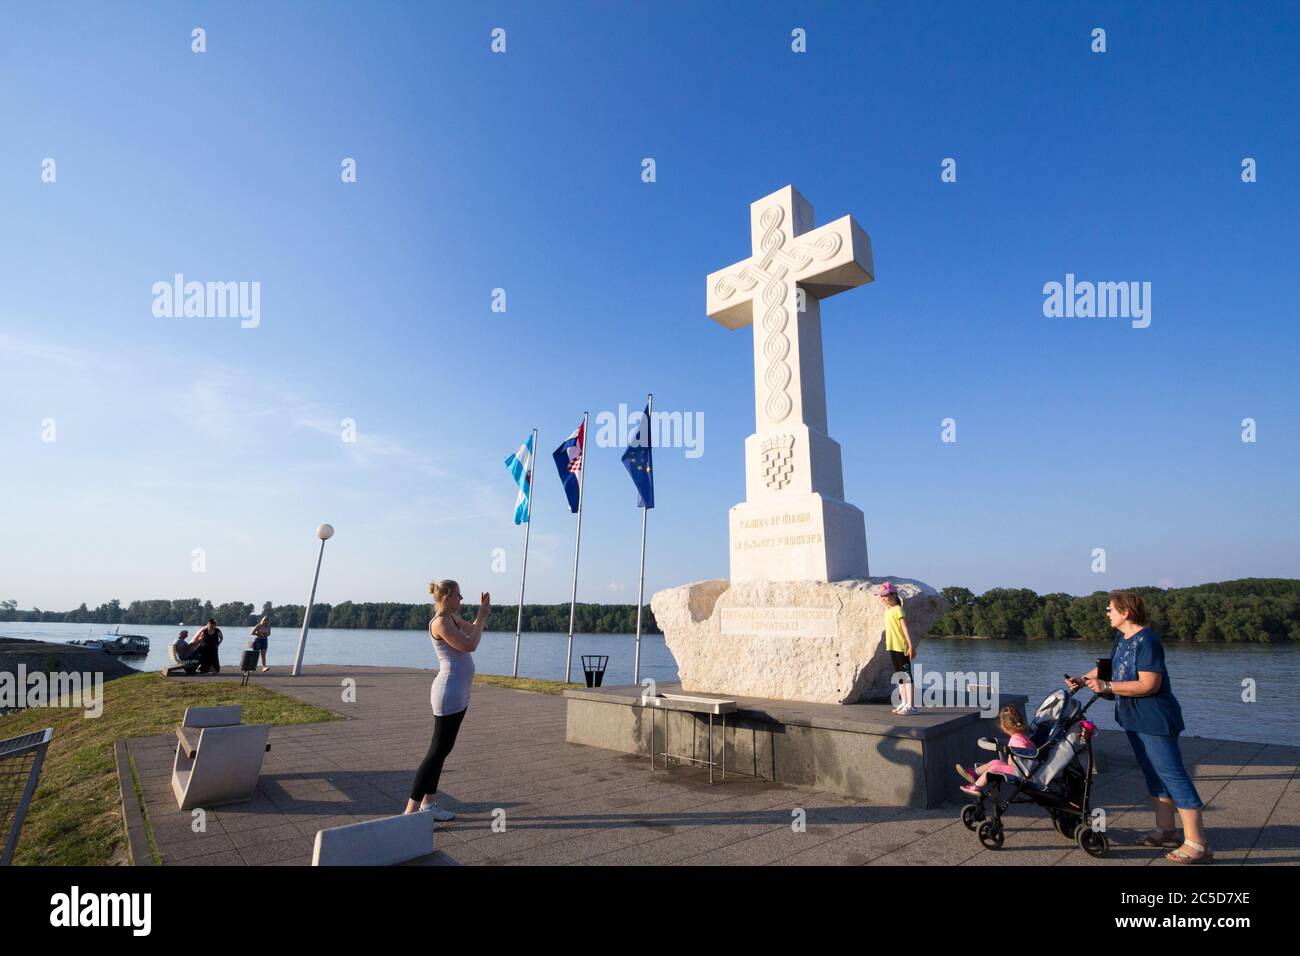 VUKOVAR, KROATIEN - 11. MAI 2018: Menschen, die vor dem Weißen Kreuz fotografieren, oder Bijeli Spomen Kriz, ein Denkmal von der katholischen Kirche zu peo Stockfoto